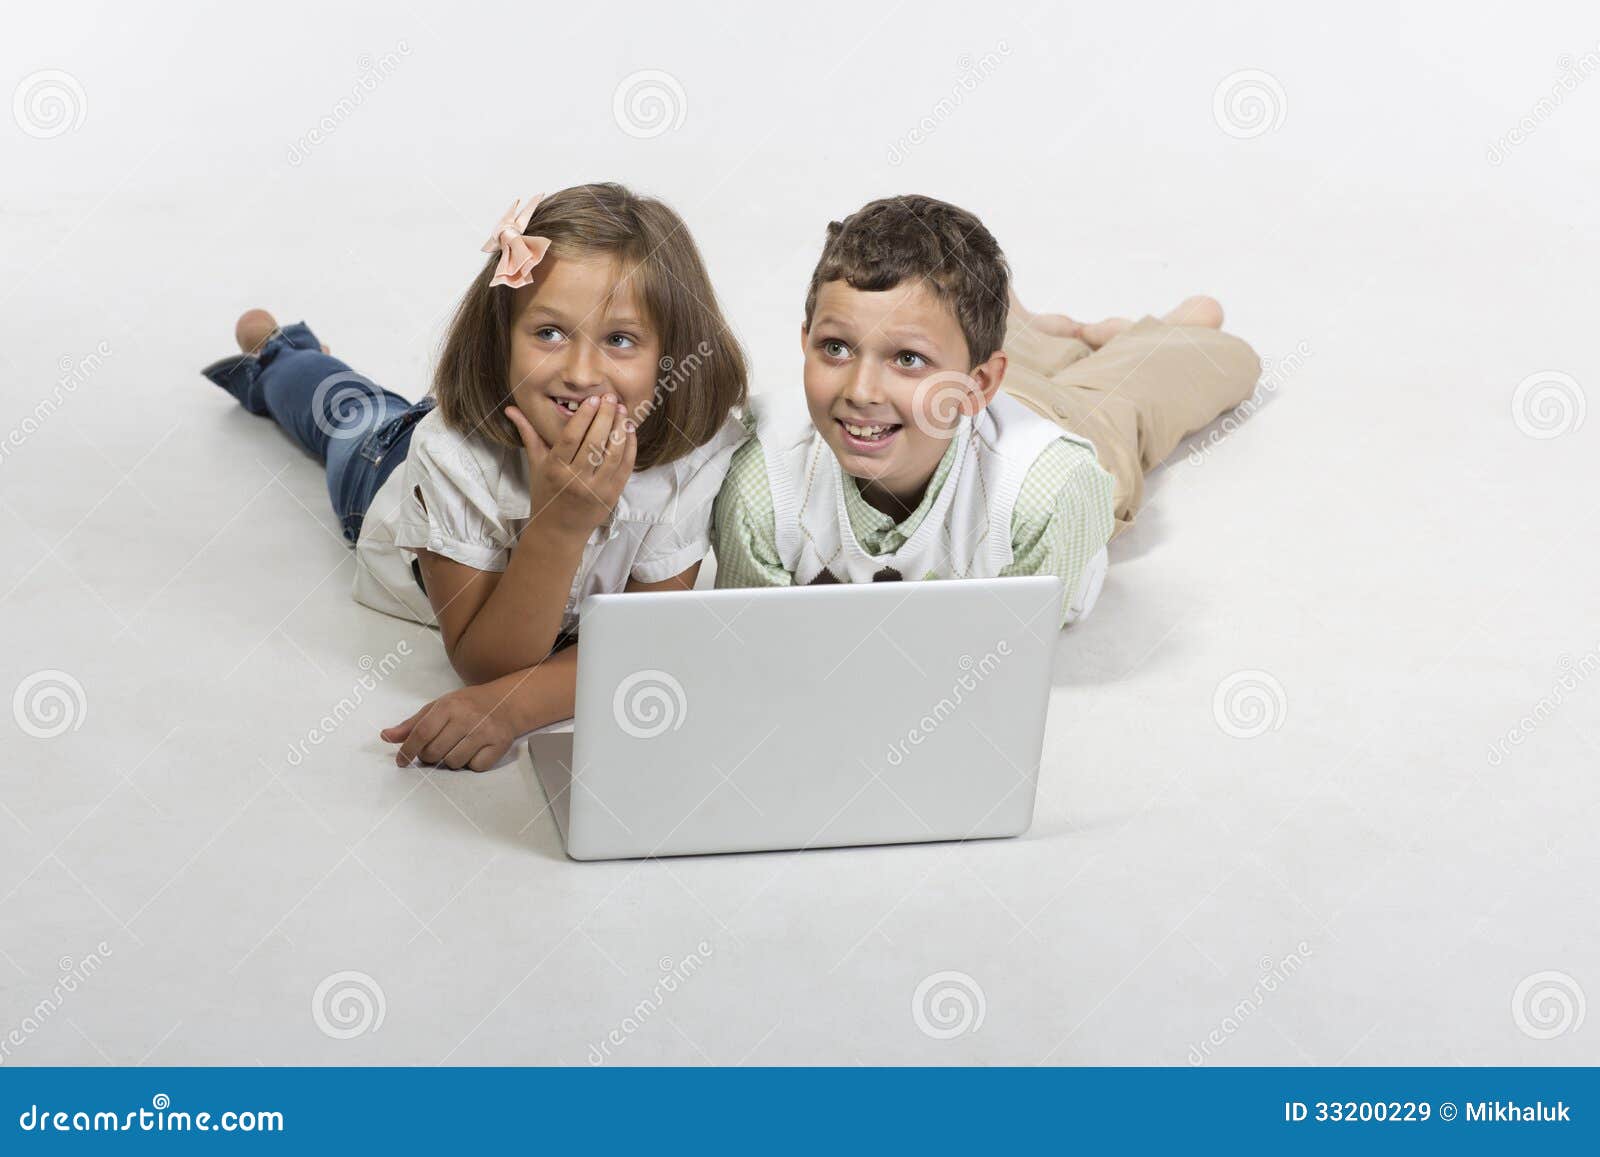 Kinderspiel Computer